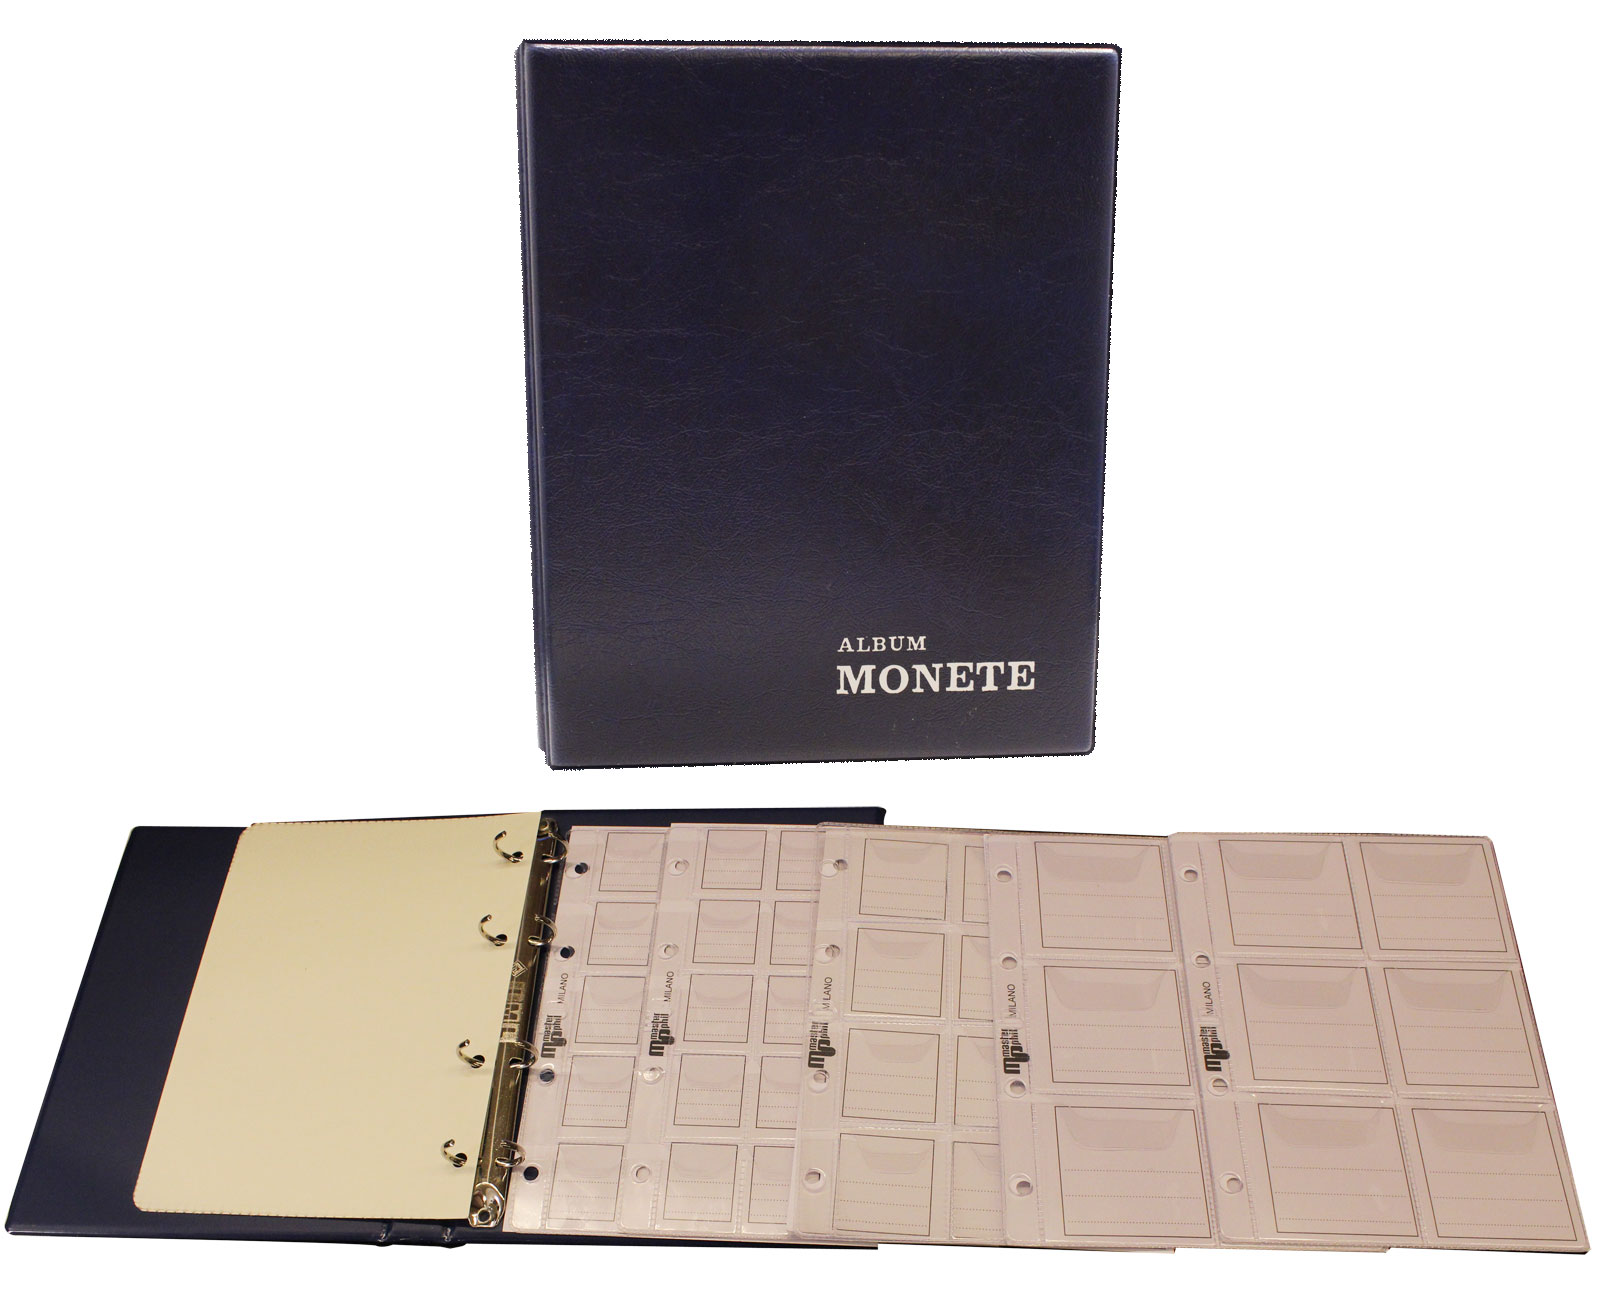  Album piccolo (dimensioni 14x18cm) per monete composto da 5 pagine con taschine di varie dimensioni - colori assortiti